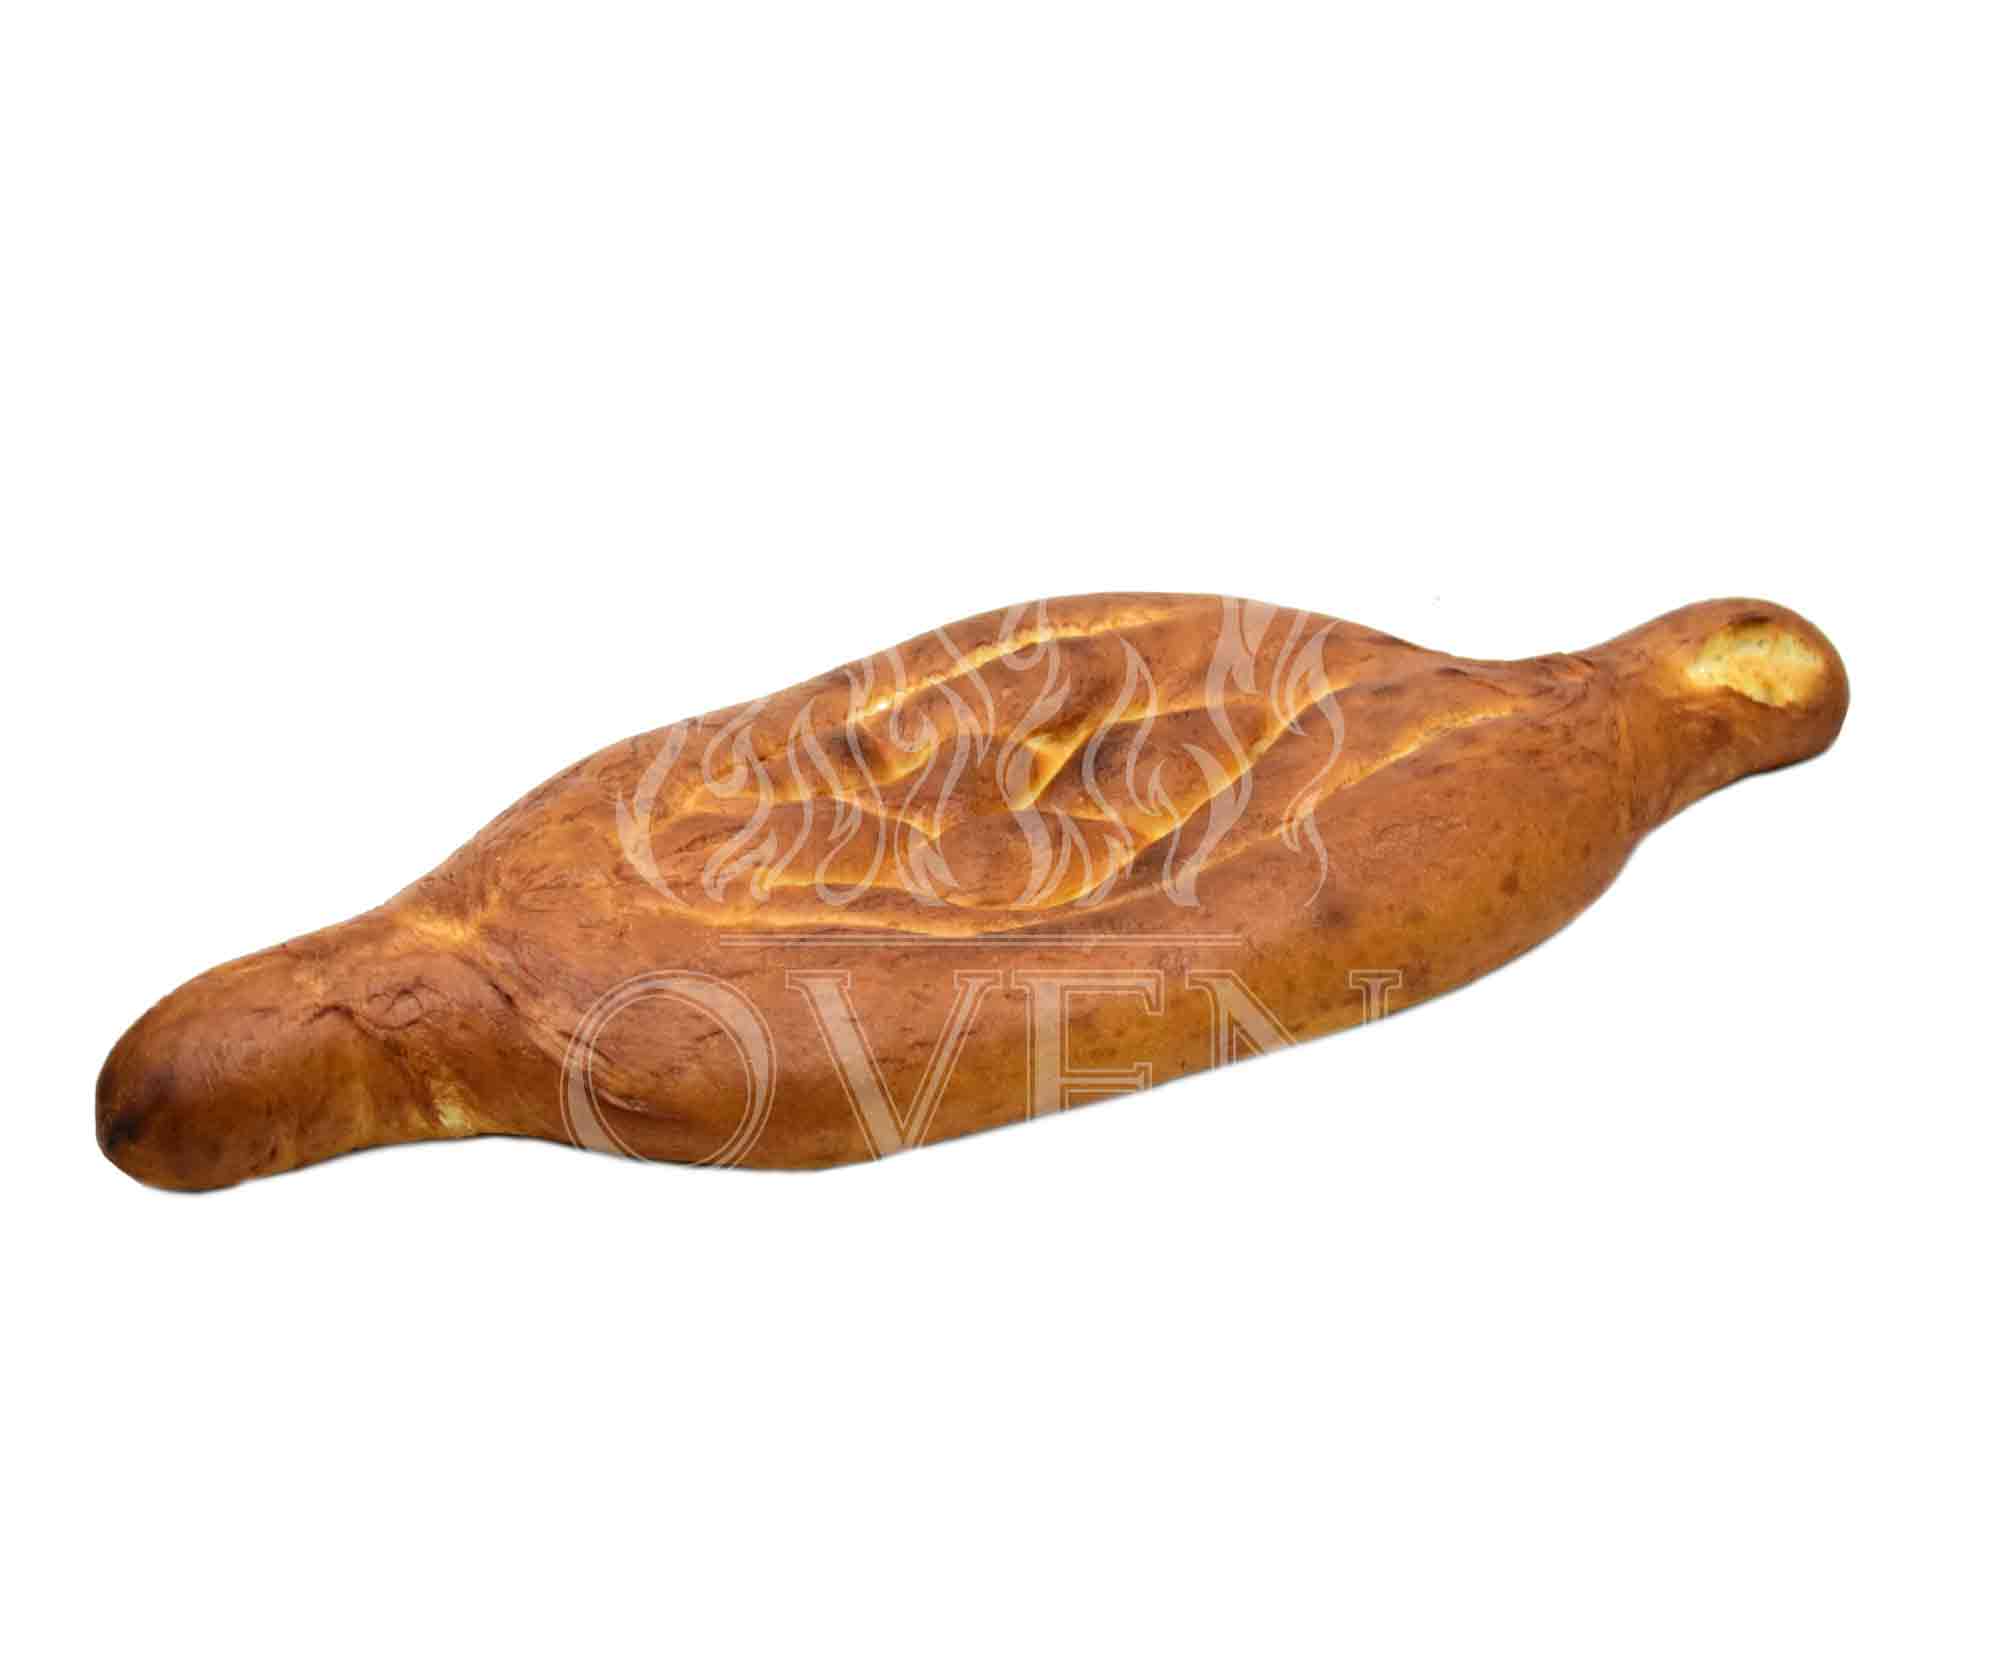 Georgian bread